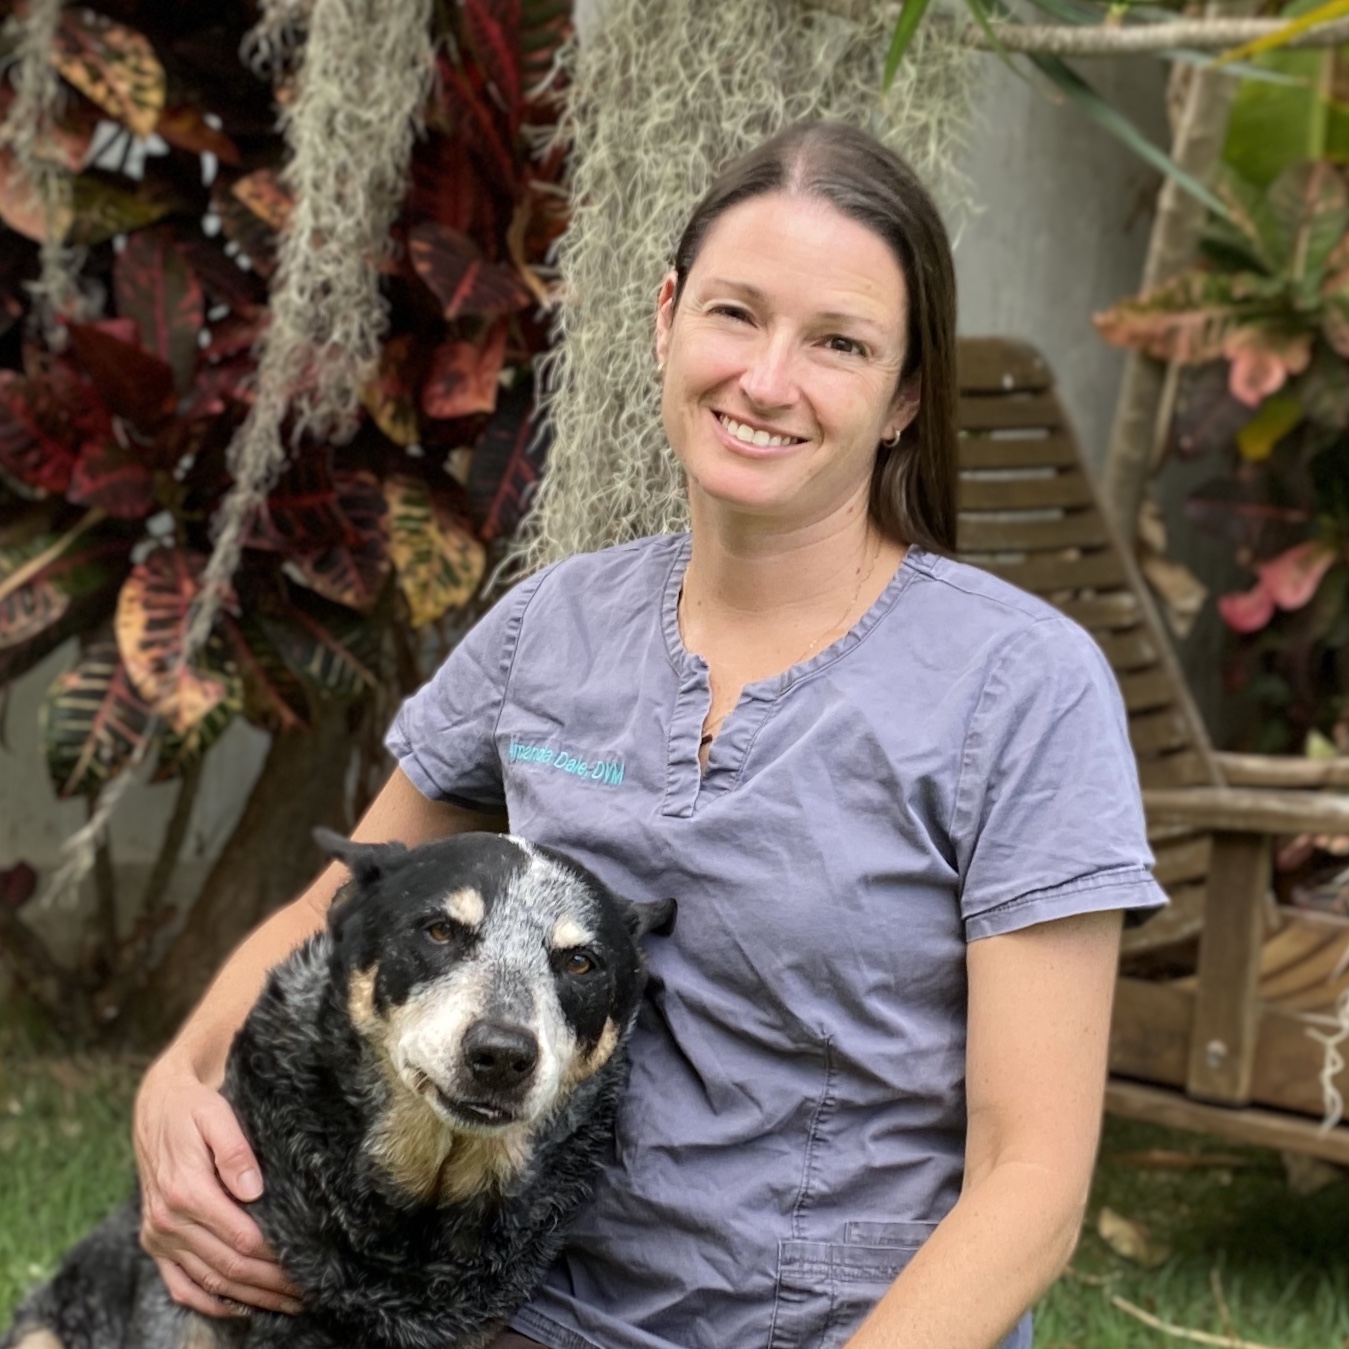 Dr. Dale and her dog Reggie - Dale Mobile Veterinary Clinic serves Waimanalo, Kailua, Kaneohe, Ahuimanu, Kahaluu, Waikane, Waiahole, Kaaawa, Laie, Punaluu, Kahuku.